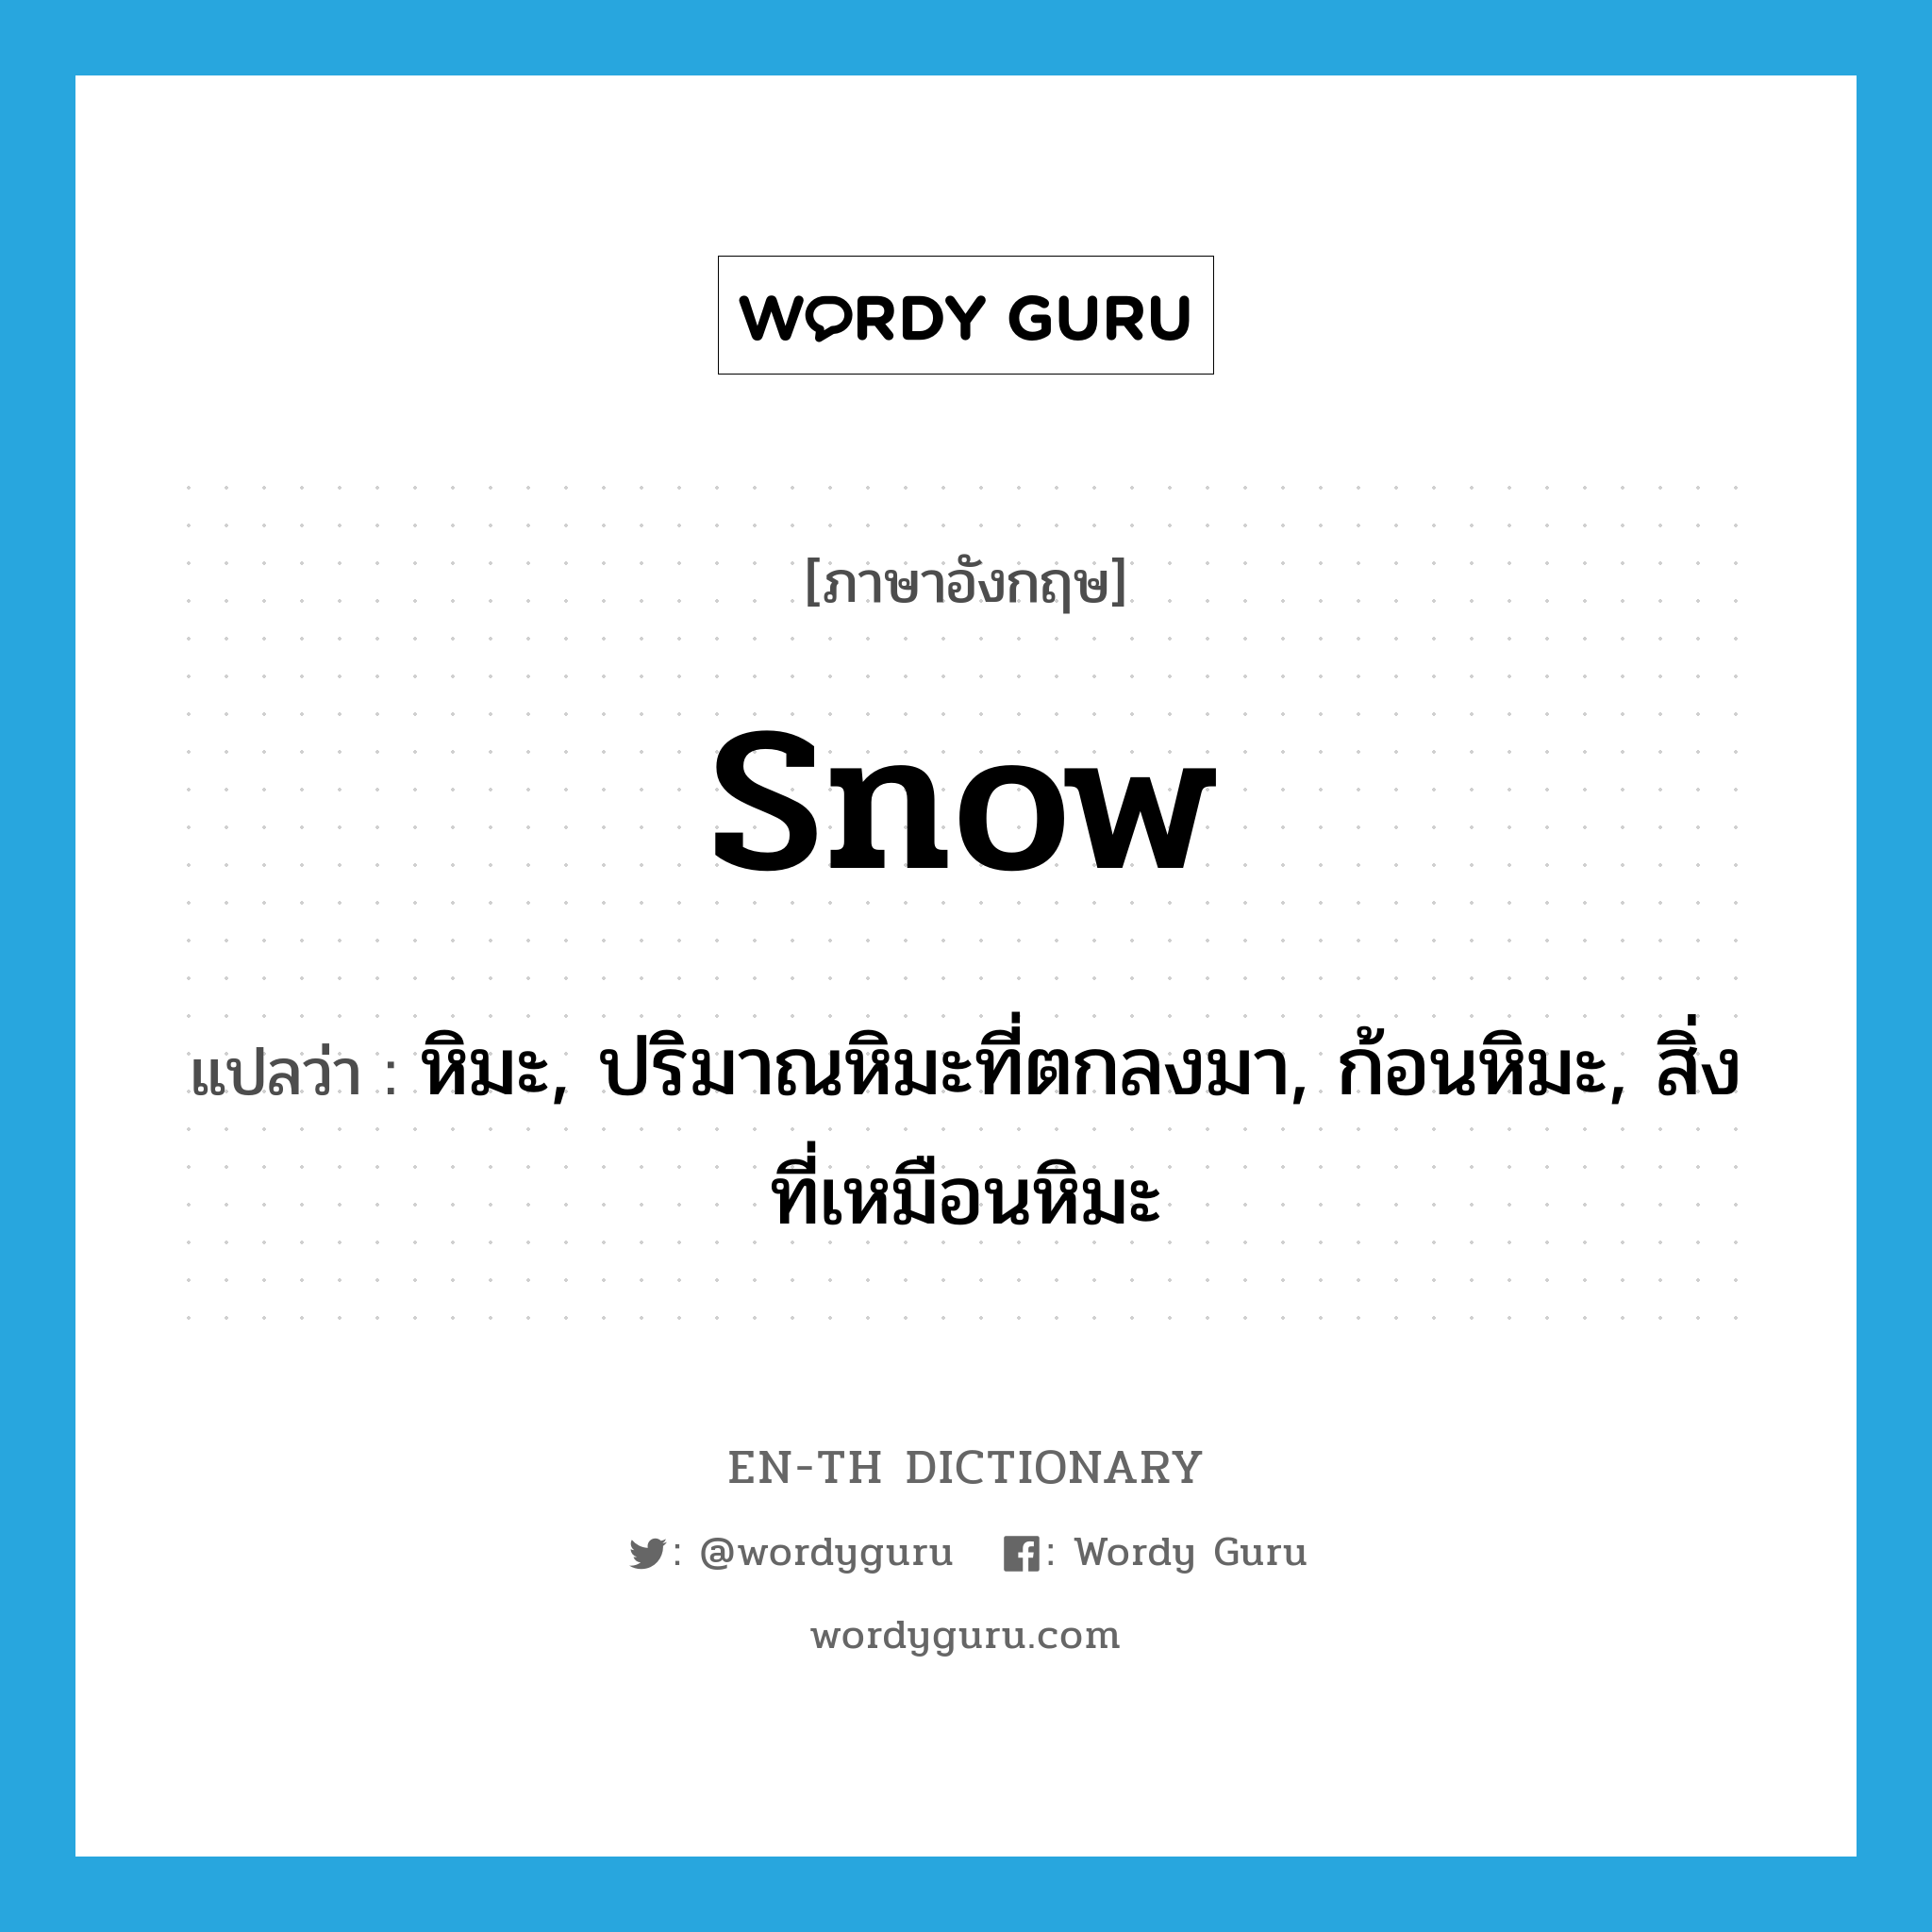 หิมะ, ปริมาณหิมะที่ตกลงมา, ก้อนหิมะ, สิ่งที่เหมือนหิมะ ภาษาอังกฤษ?, คำศัพท์ภาษาอังกฤษ หิมะ, ปริมาณหิมะที่ตกลงมา, ก้อนหิมะ, สิ่งที่เหมือนหิมะ แปลว่า snow ประเภท N หมวด N